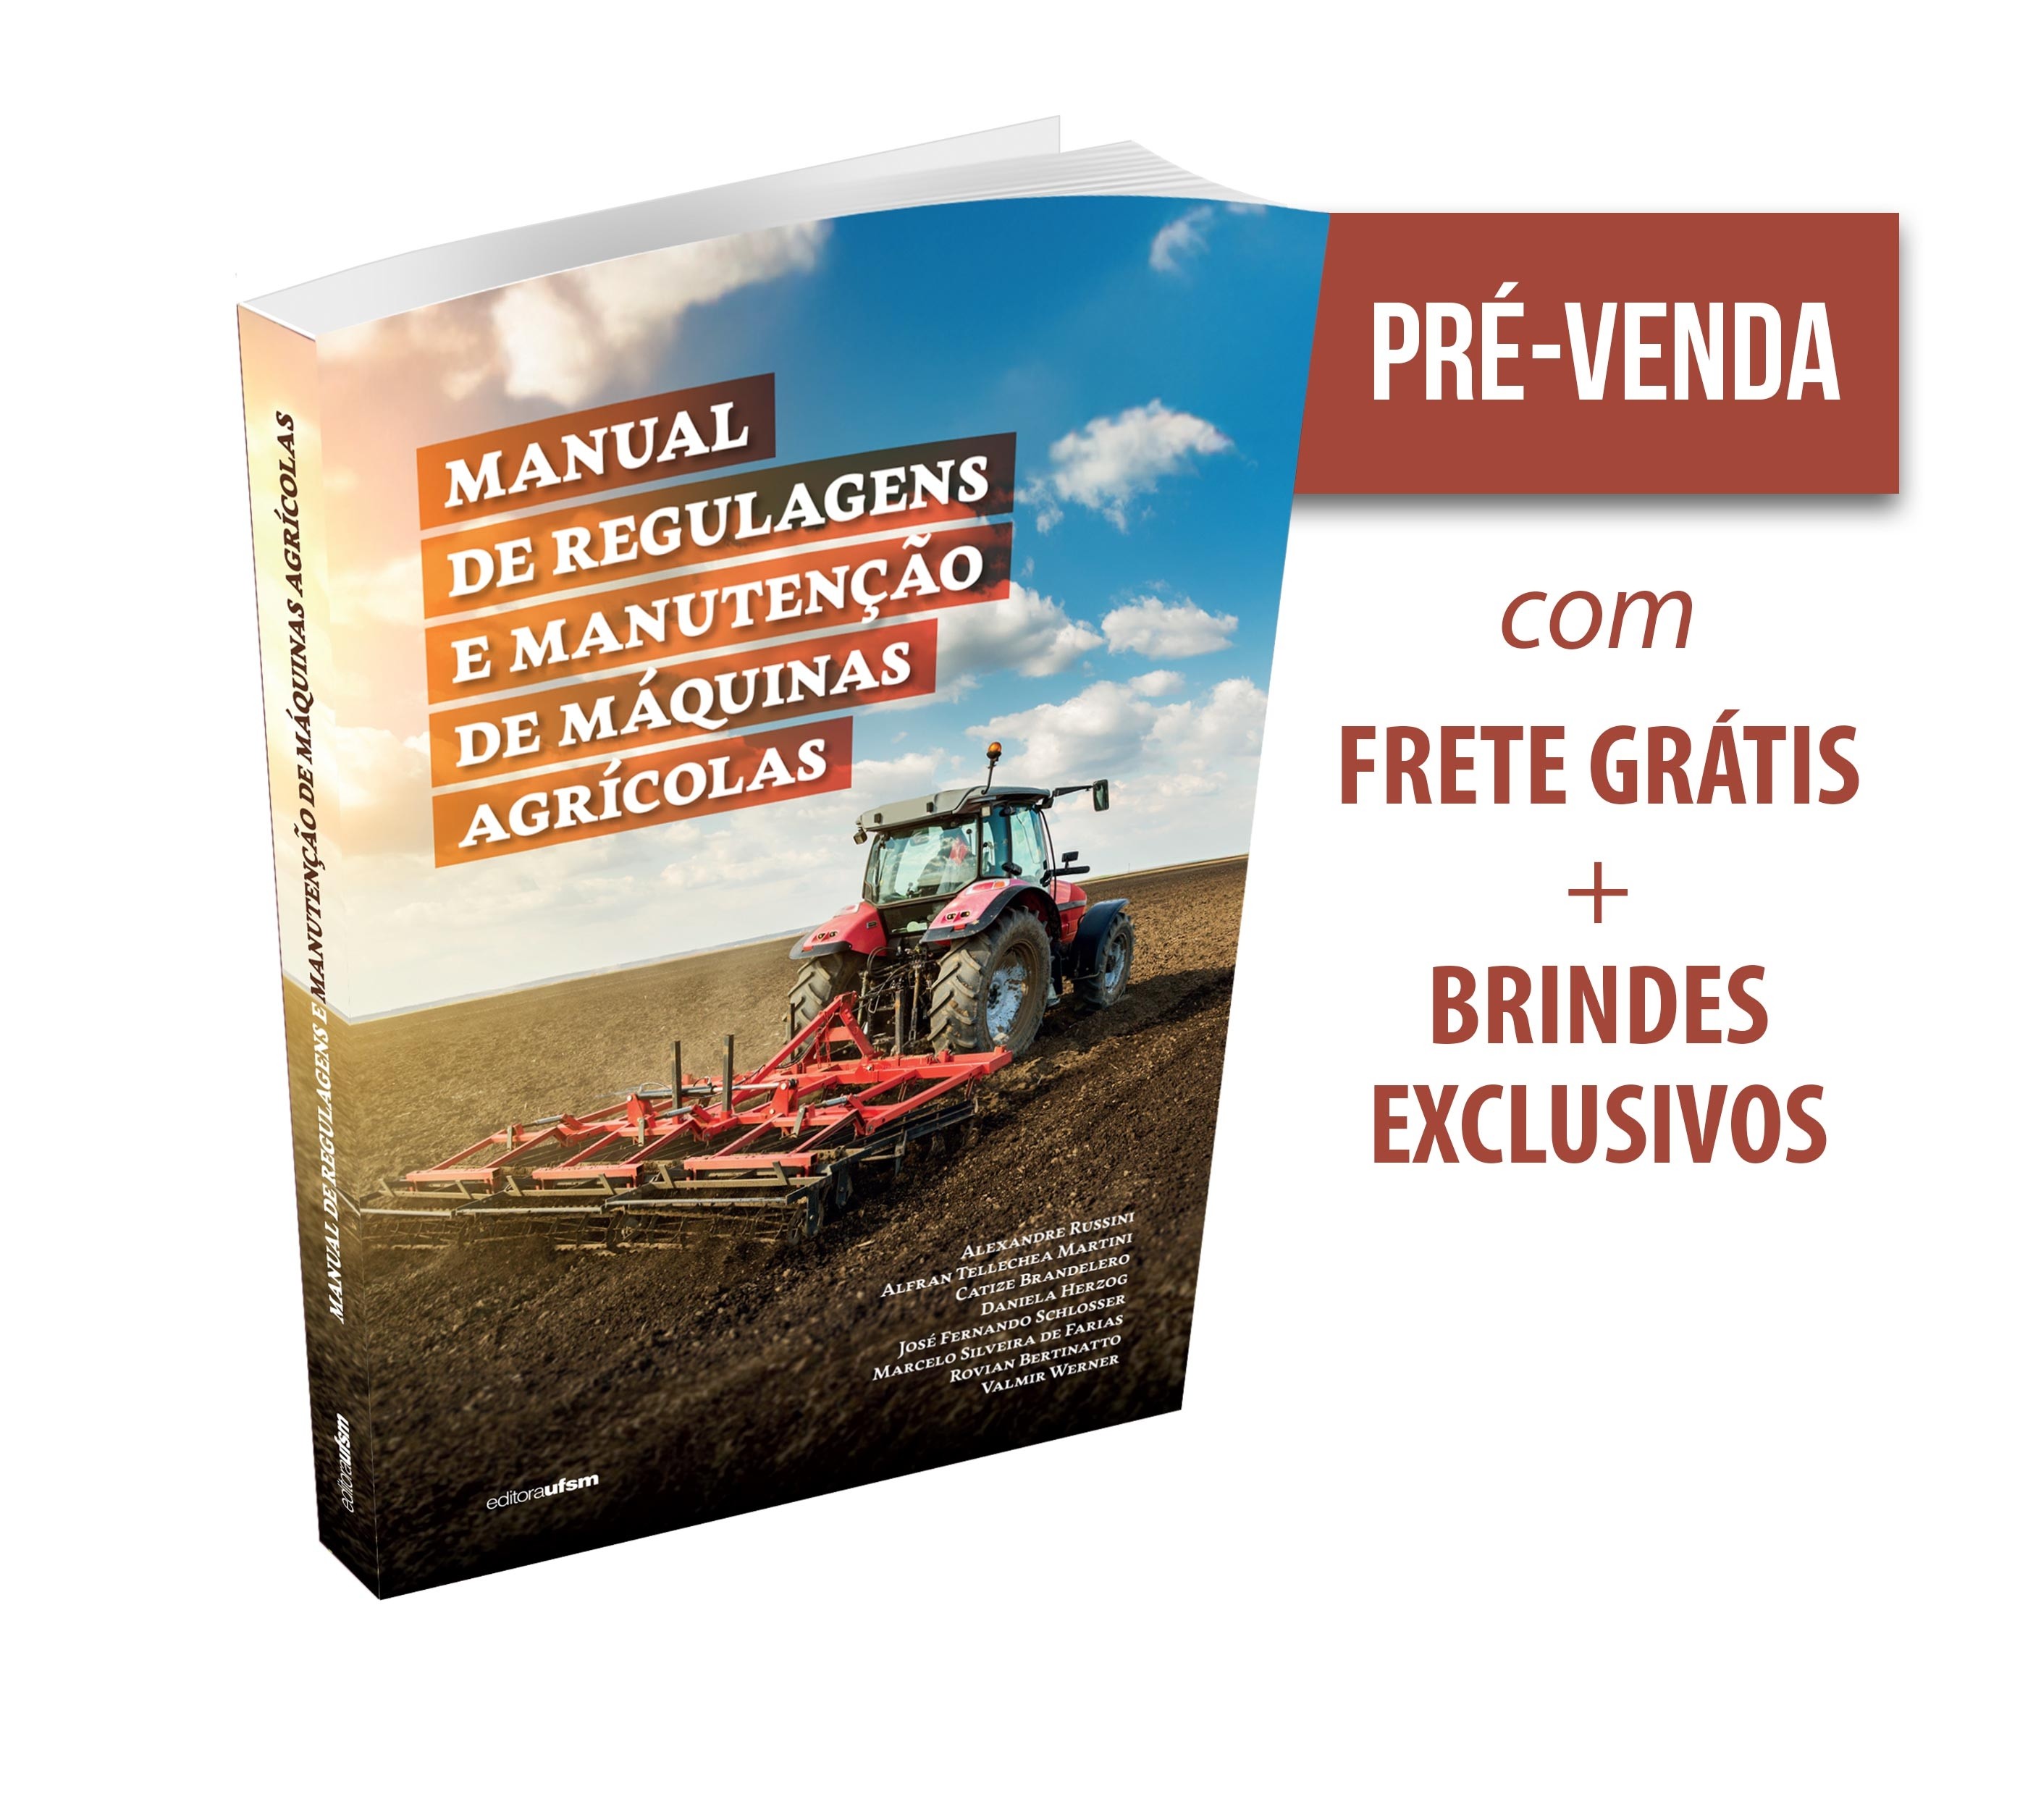 Capa do livro Manual de regulagens e manutenção de máquinas agrícolas